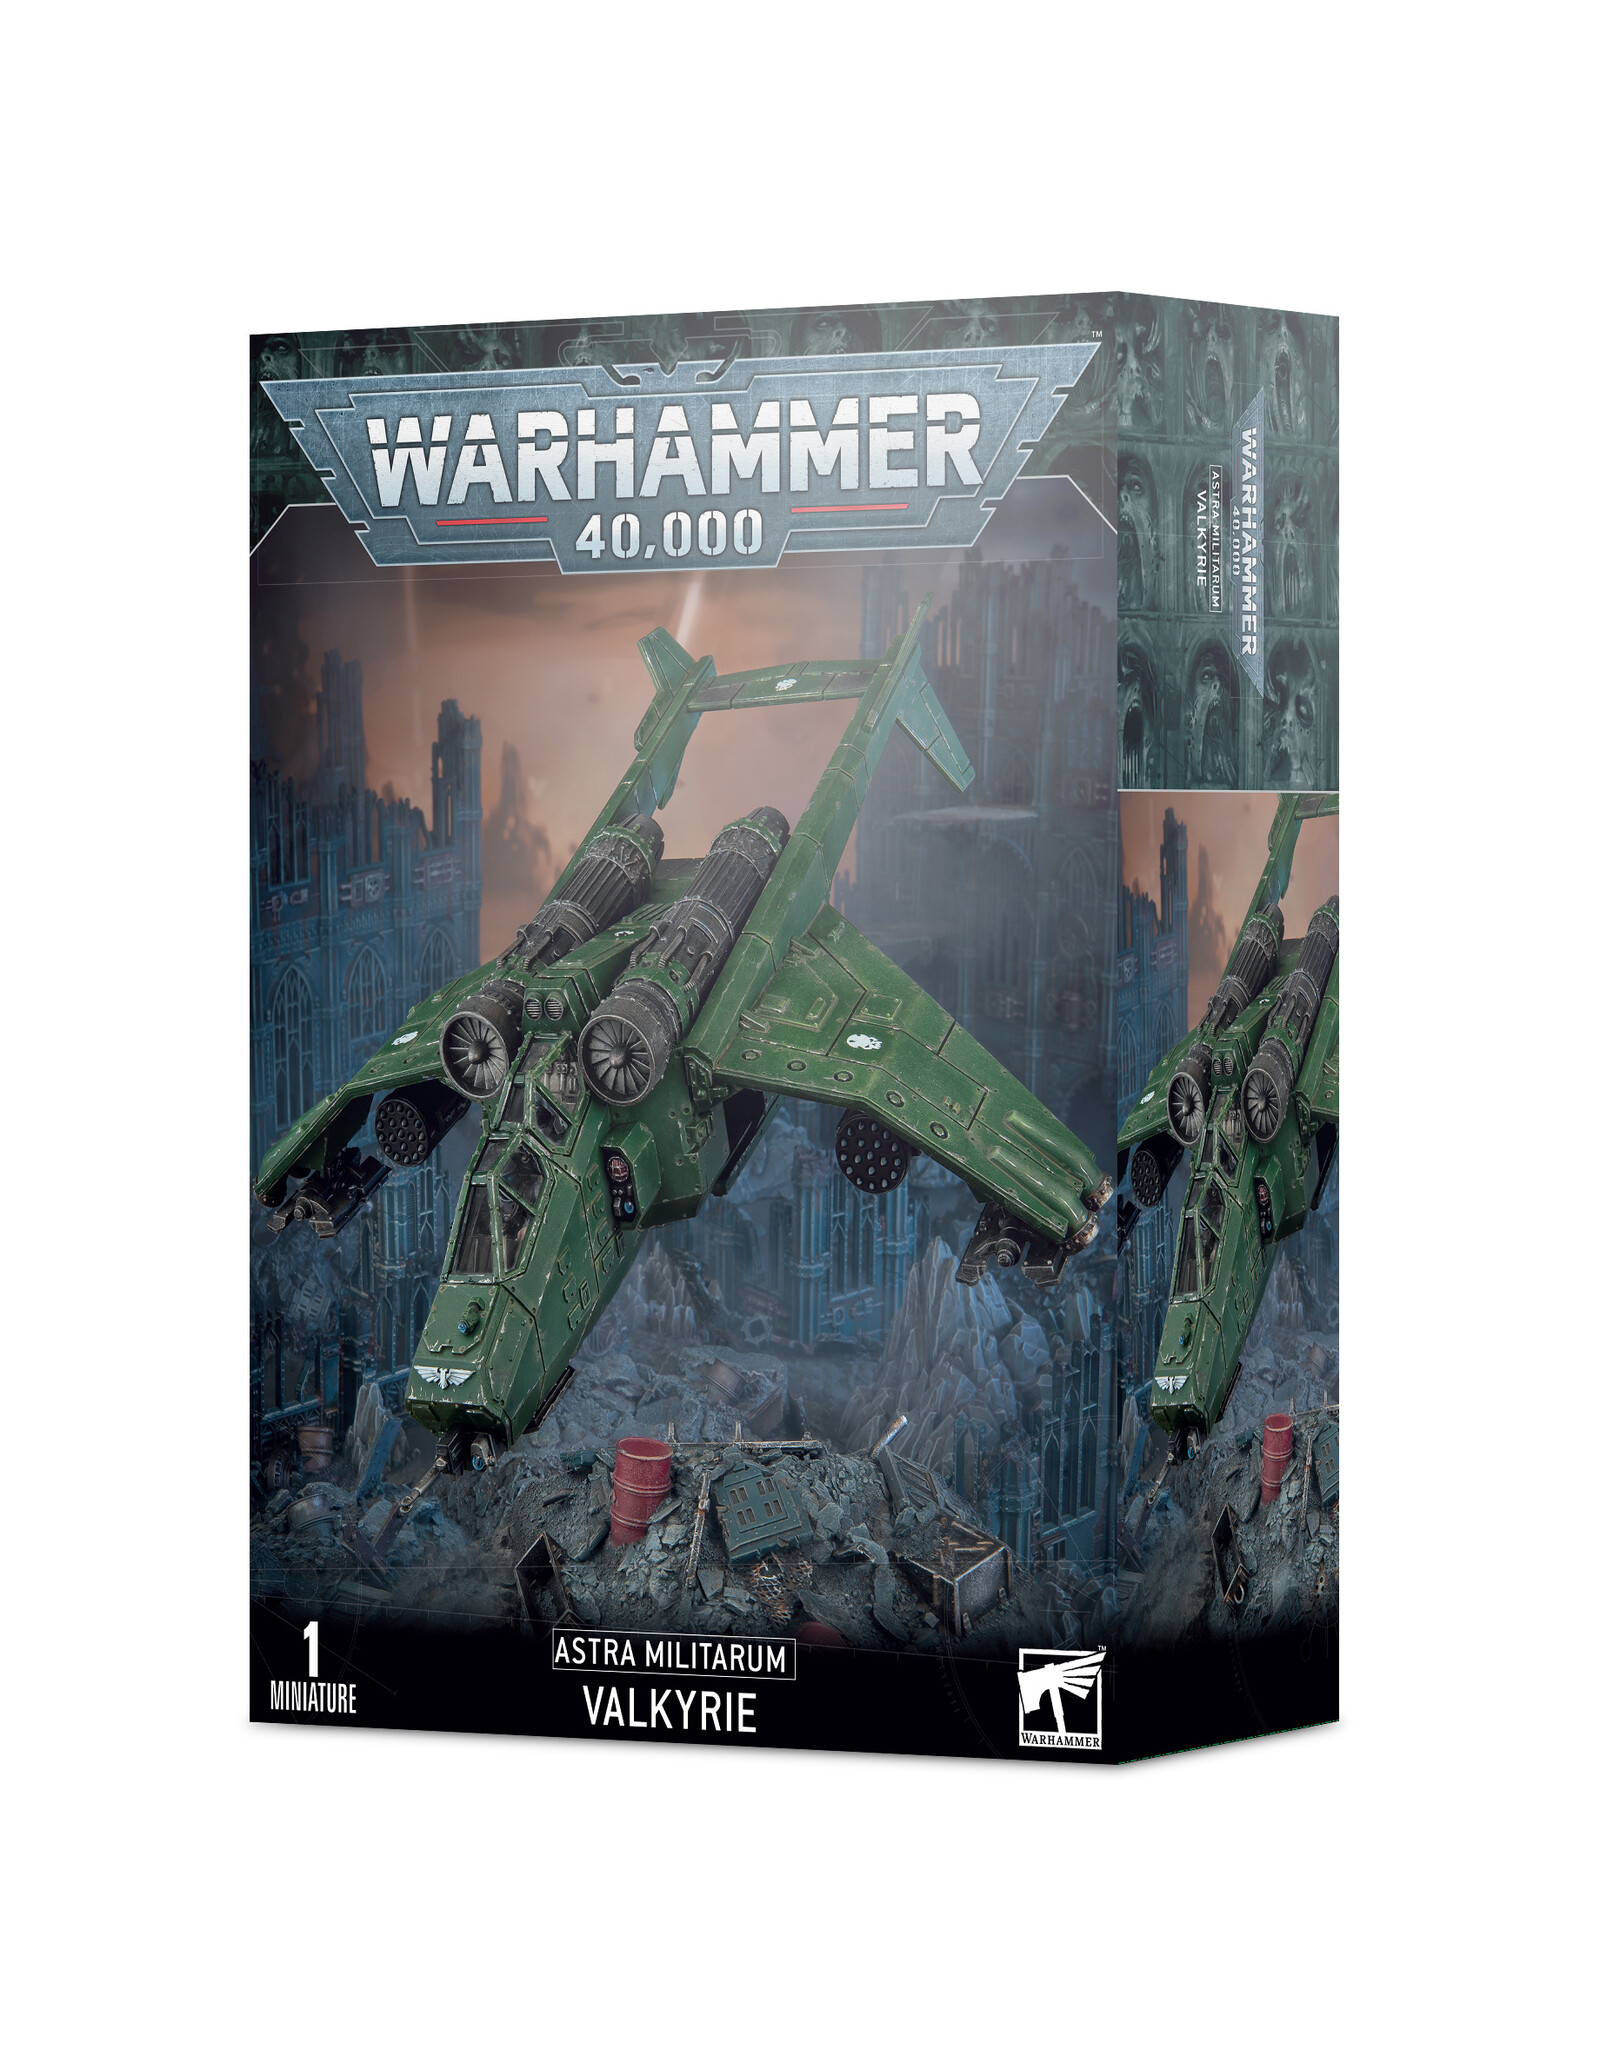 Warhammer 40K Astra Militarium Valkyrie